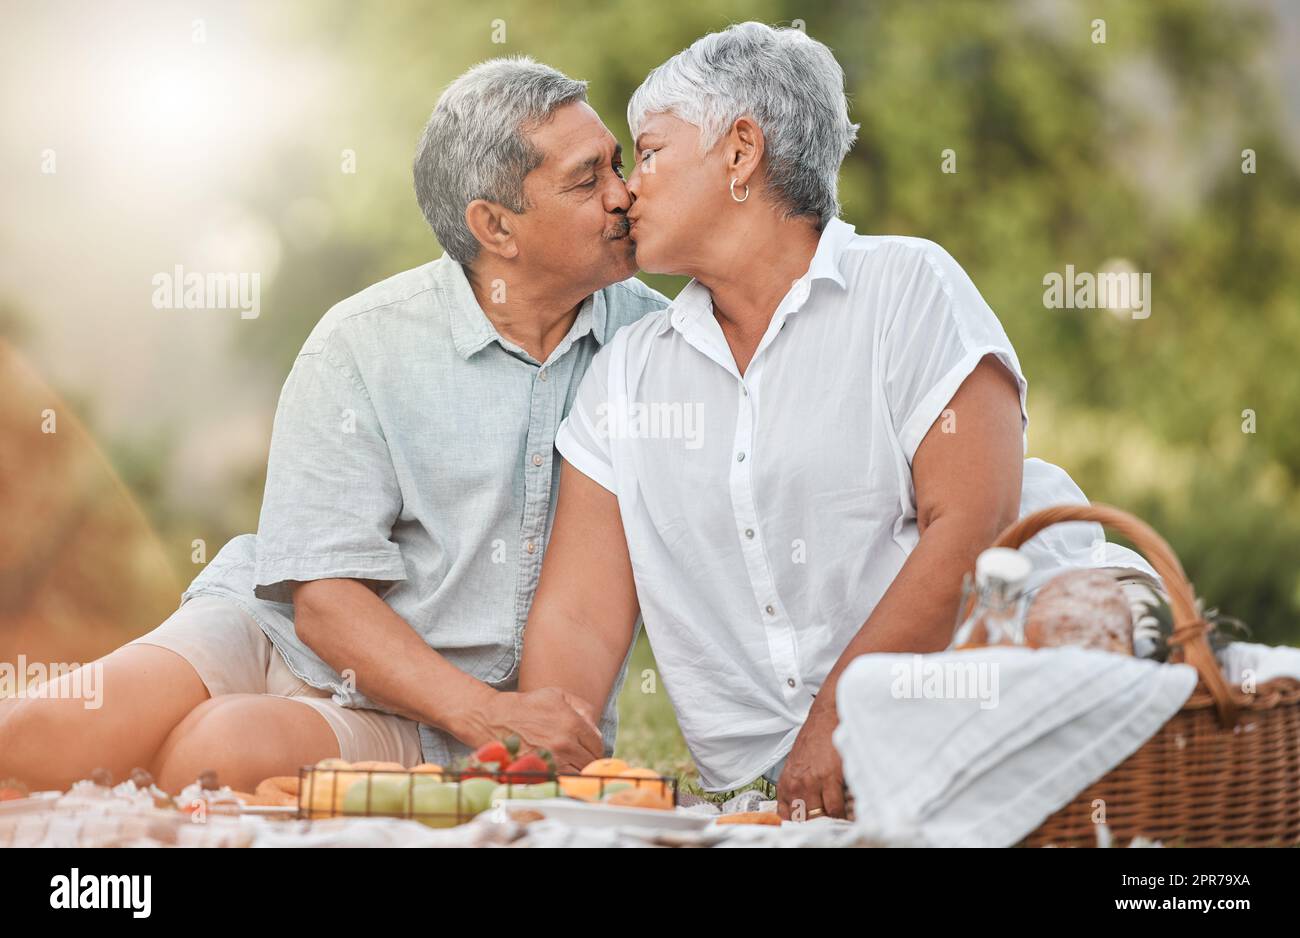 Les seules lèvres que je veux embrasser. Un couple mature embrassant pendant un pique-nique. Banque D'Images